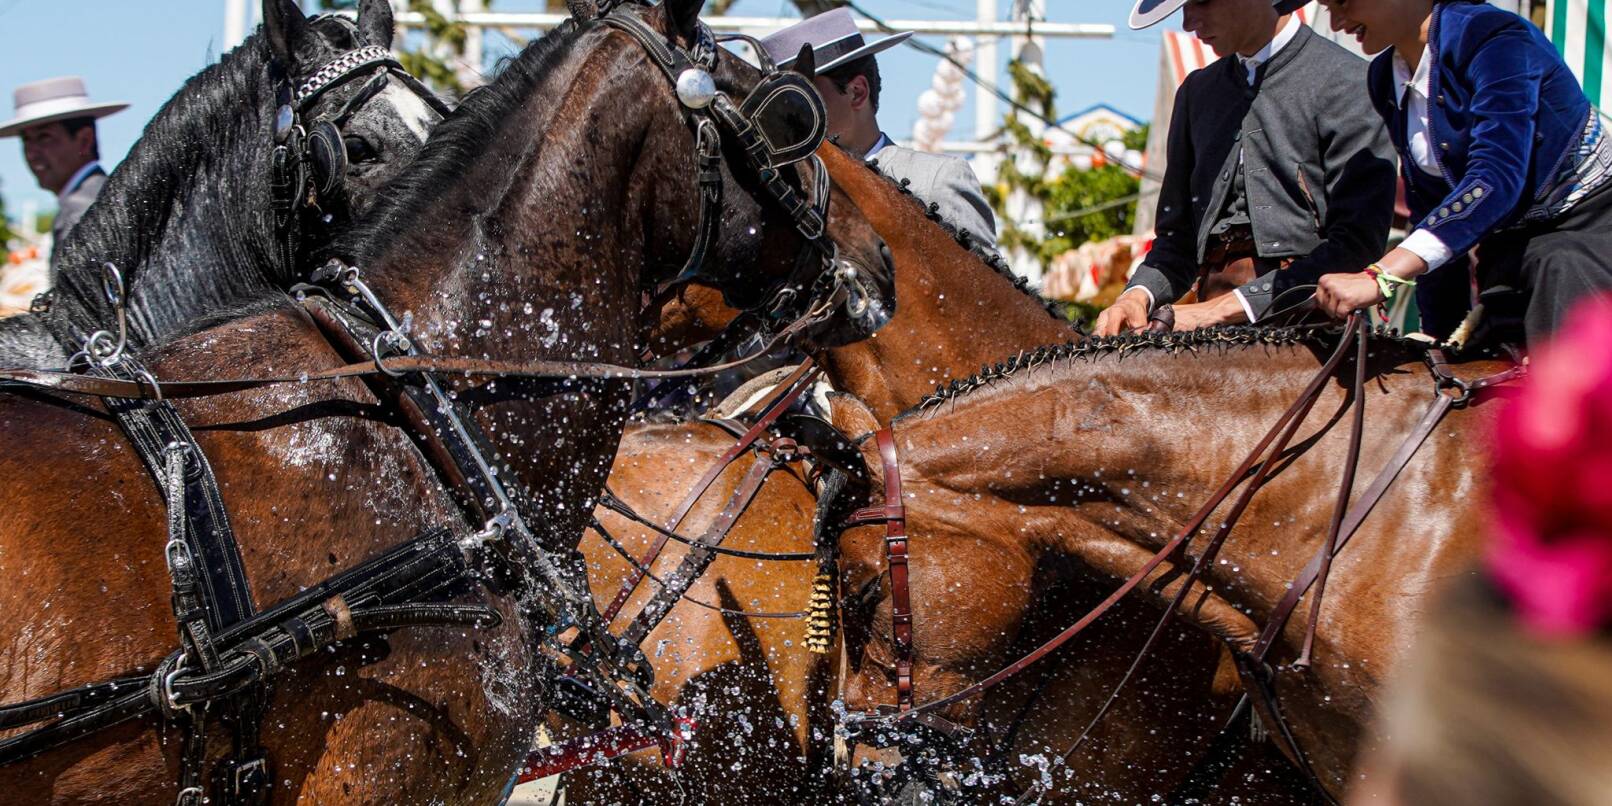 Pferde trinken trinken auf der heißen Aprilmesse in Sevilla Wasser.